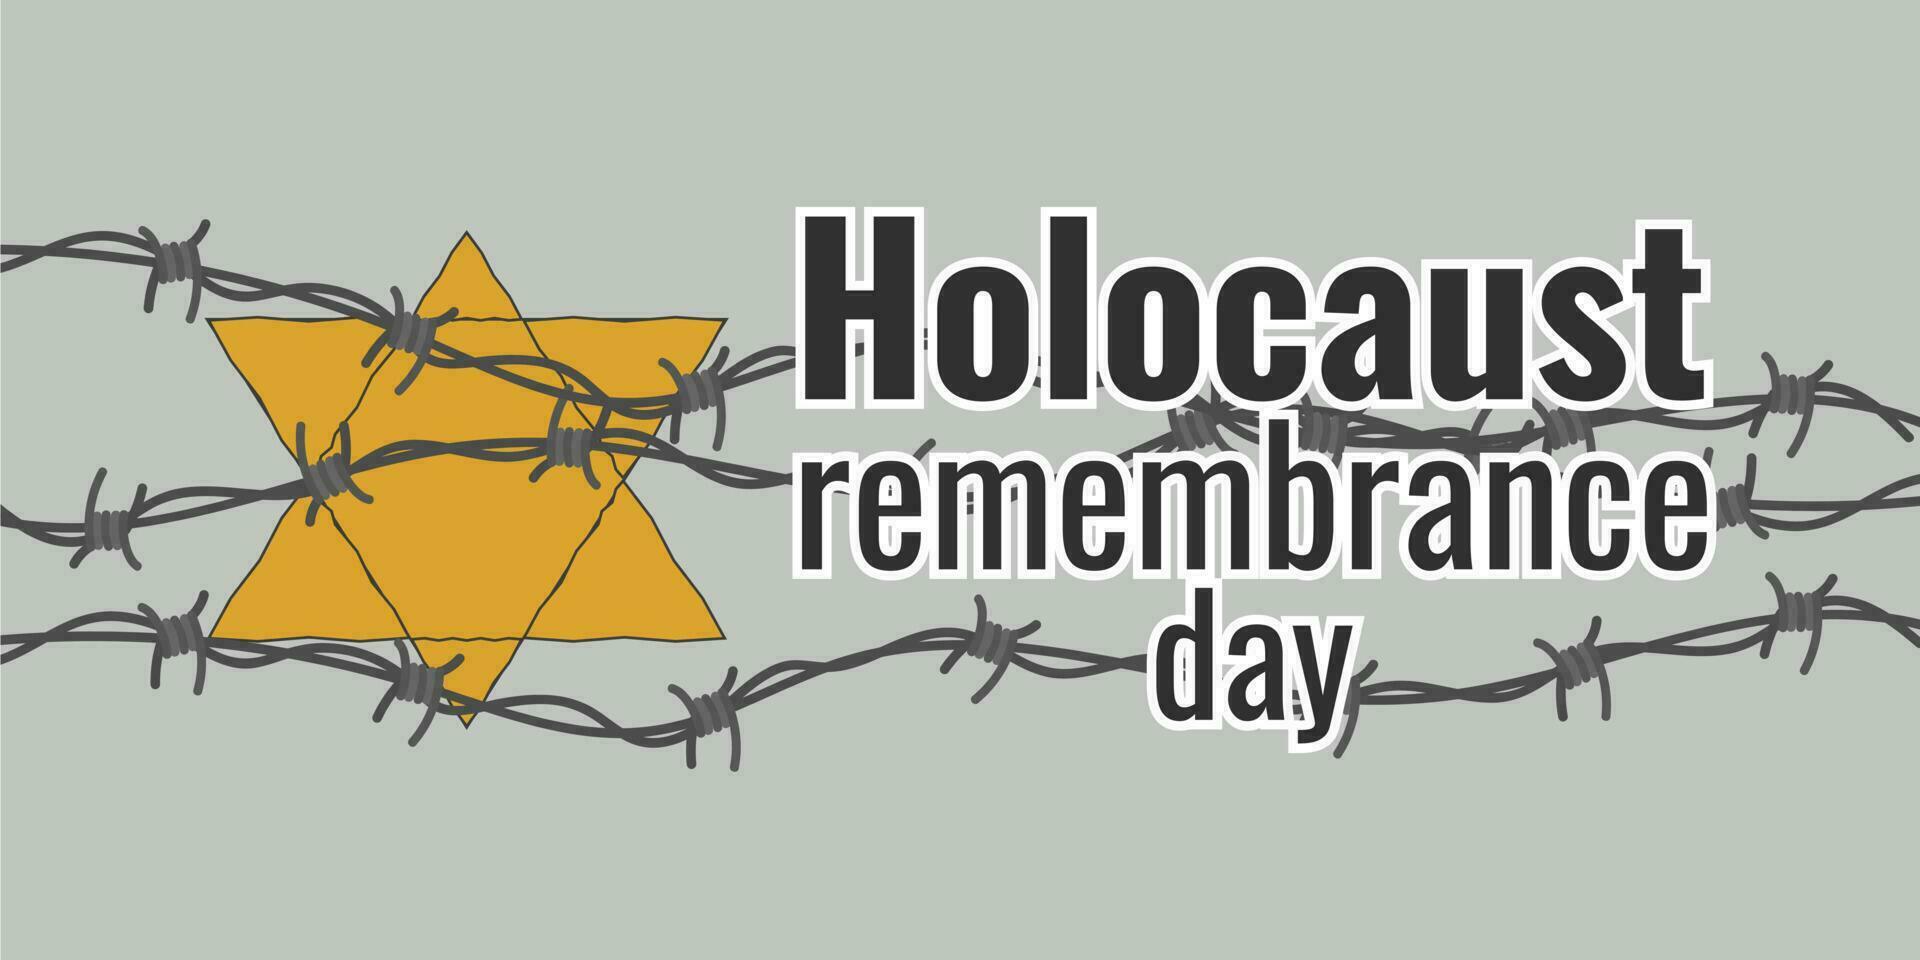 Mémorial journée de le génocide juif personnes. vecteur